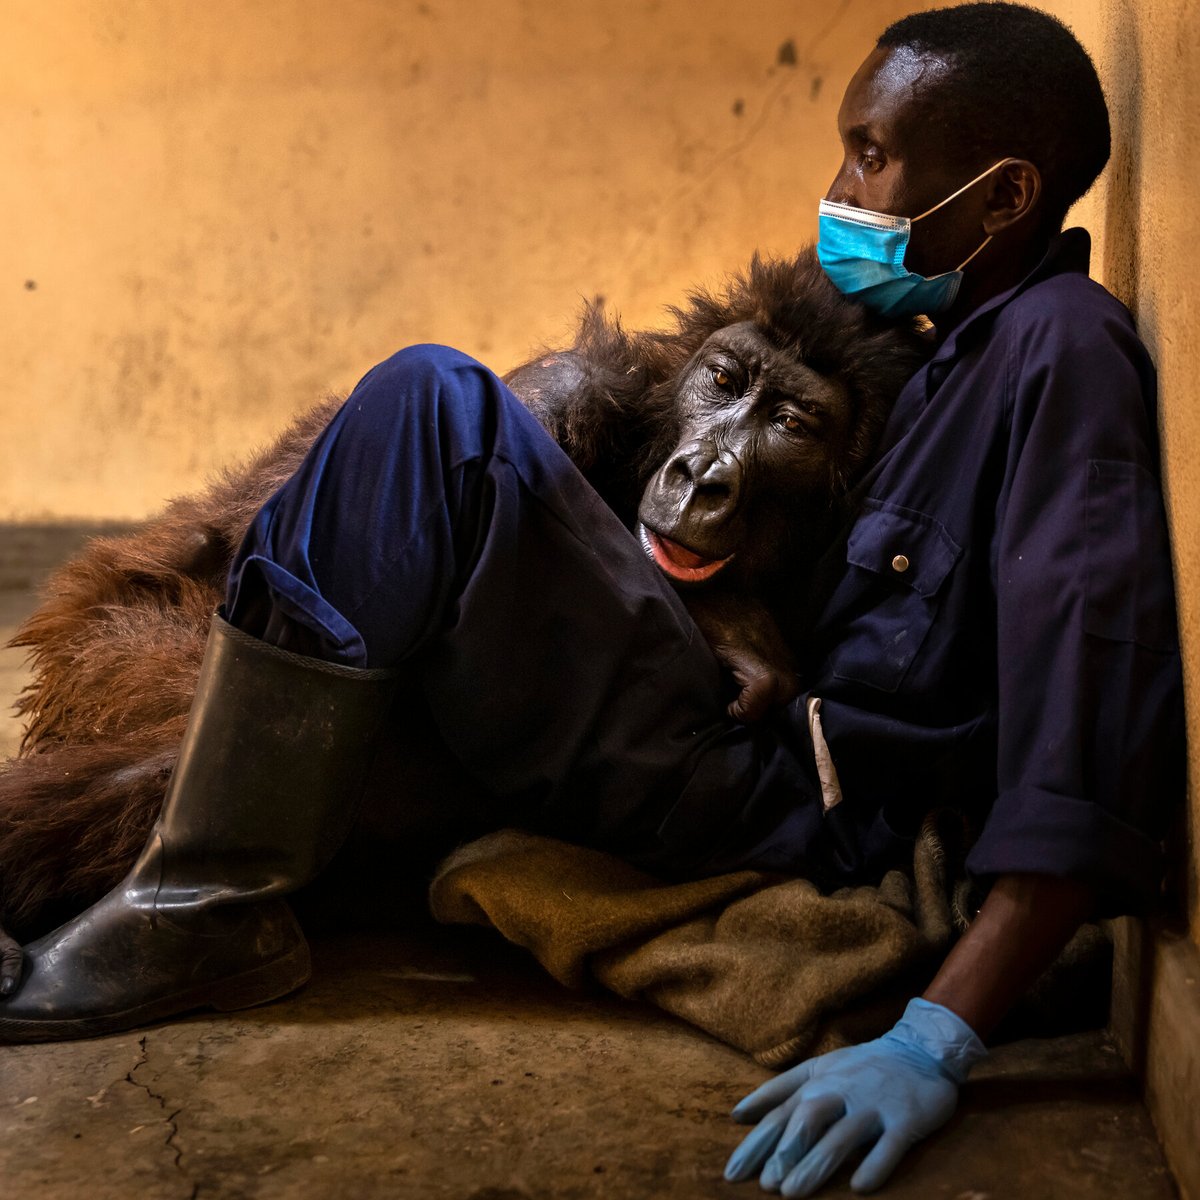 Bouleversante et poignante photo des derniers souffles de Ndakasi, gorille des montagnes 🦍, alors qu’elle repose dans les bras de Andre Bauma, son sauveteur et soignant depuis 13 ans.

Ndakasi, ayant perdu toute sa famille à cause d'une mafia barconnière, vivait depuis ses deux…